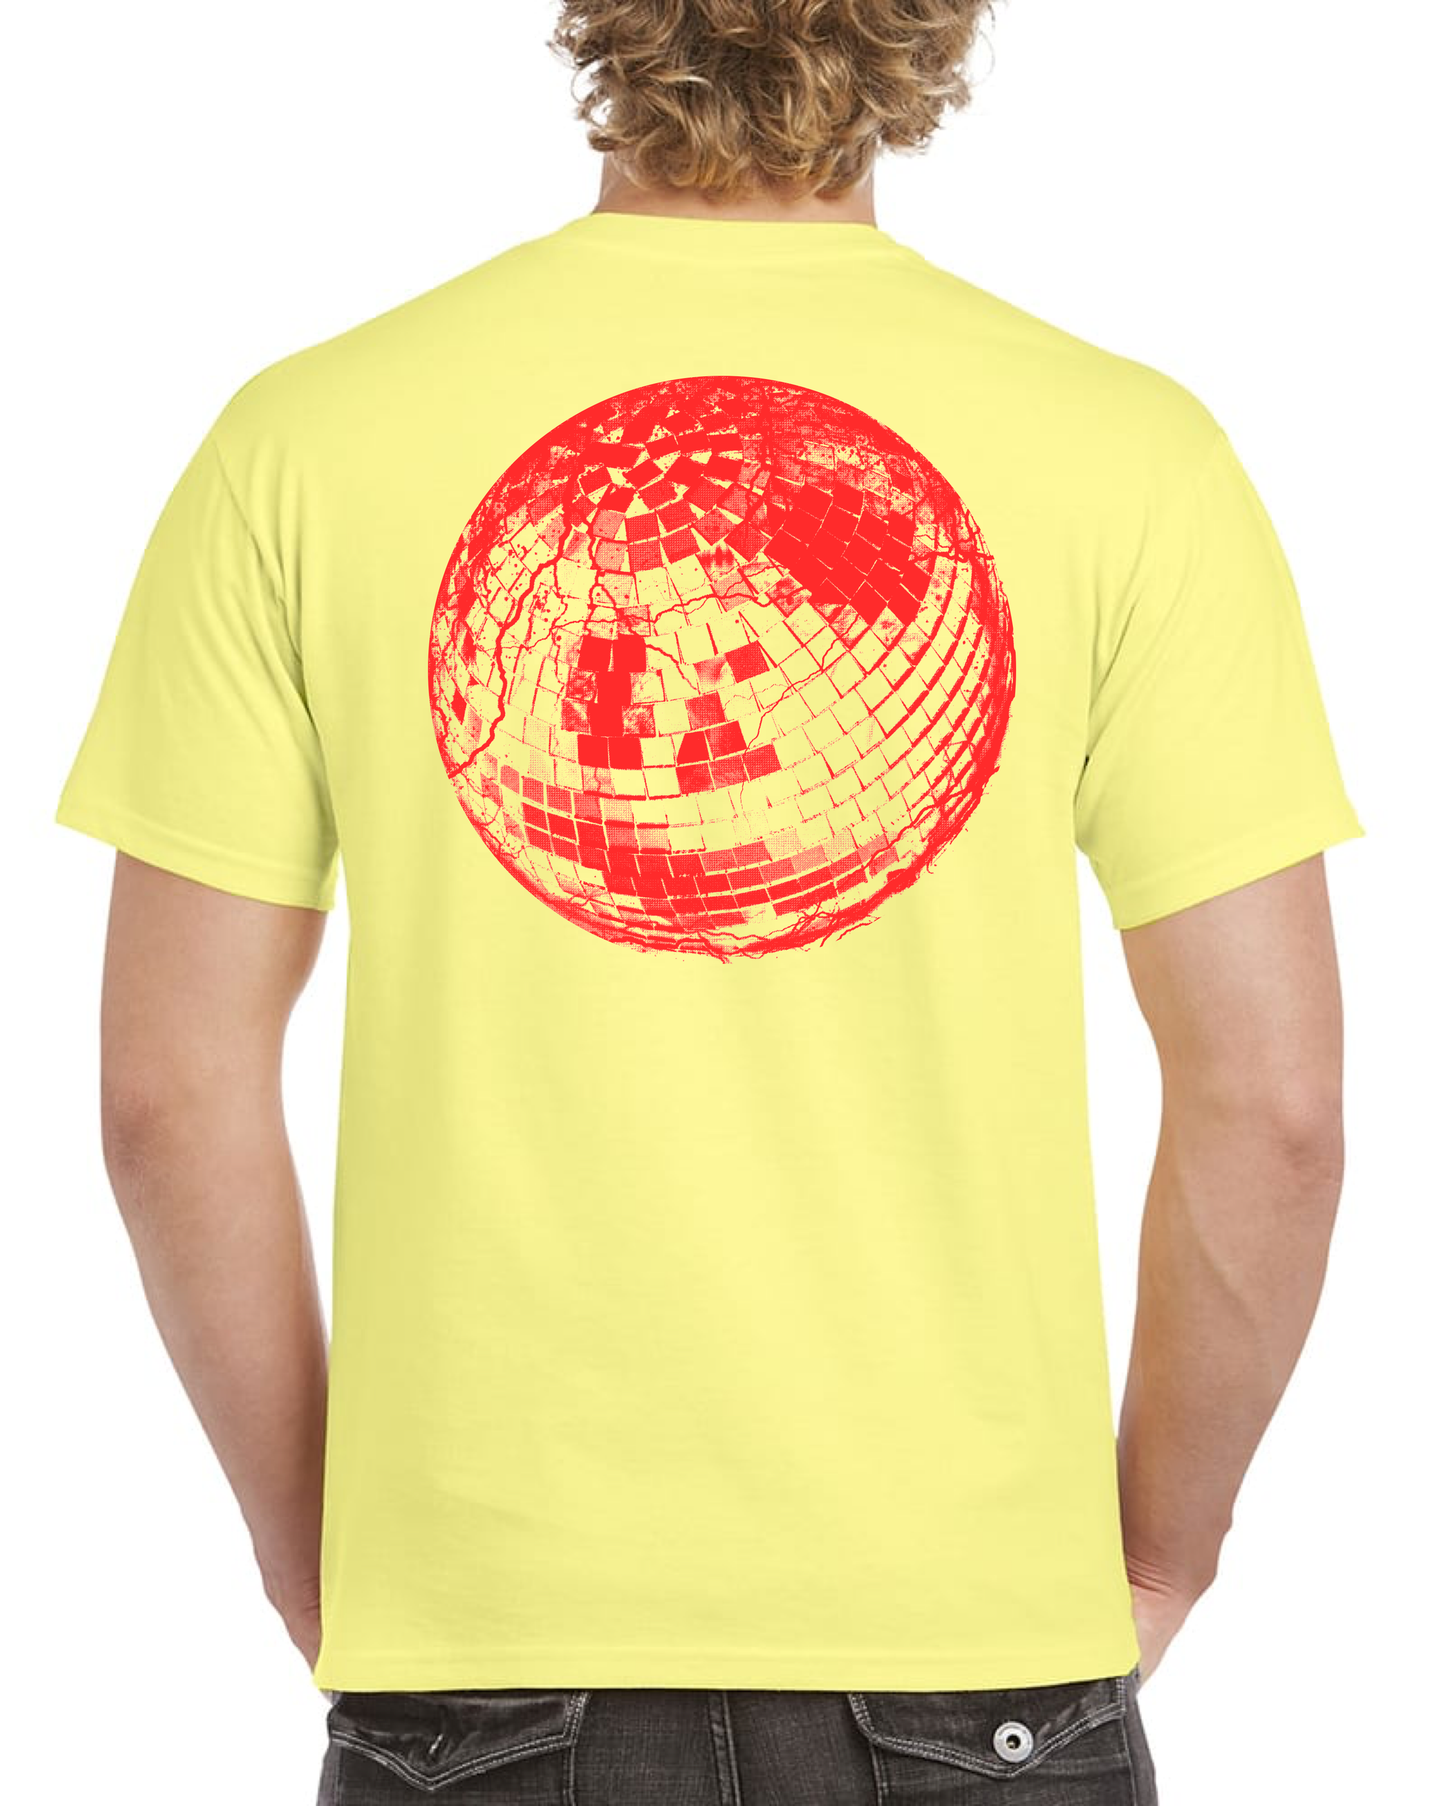 Diskopunk Yellow T-shirt